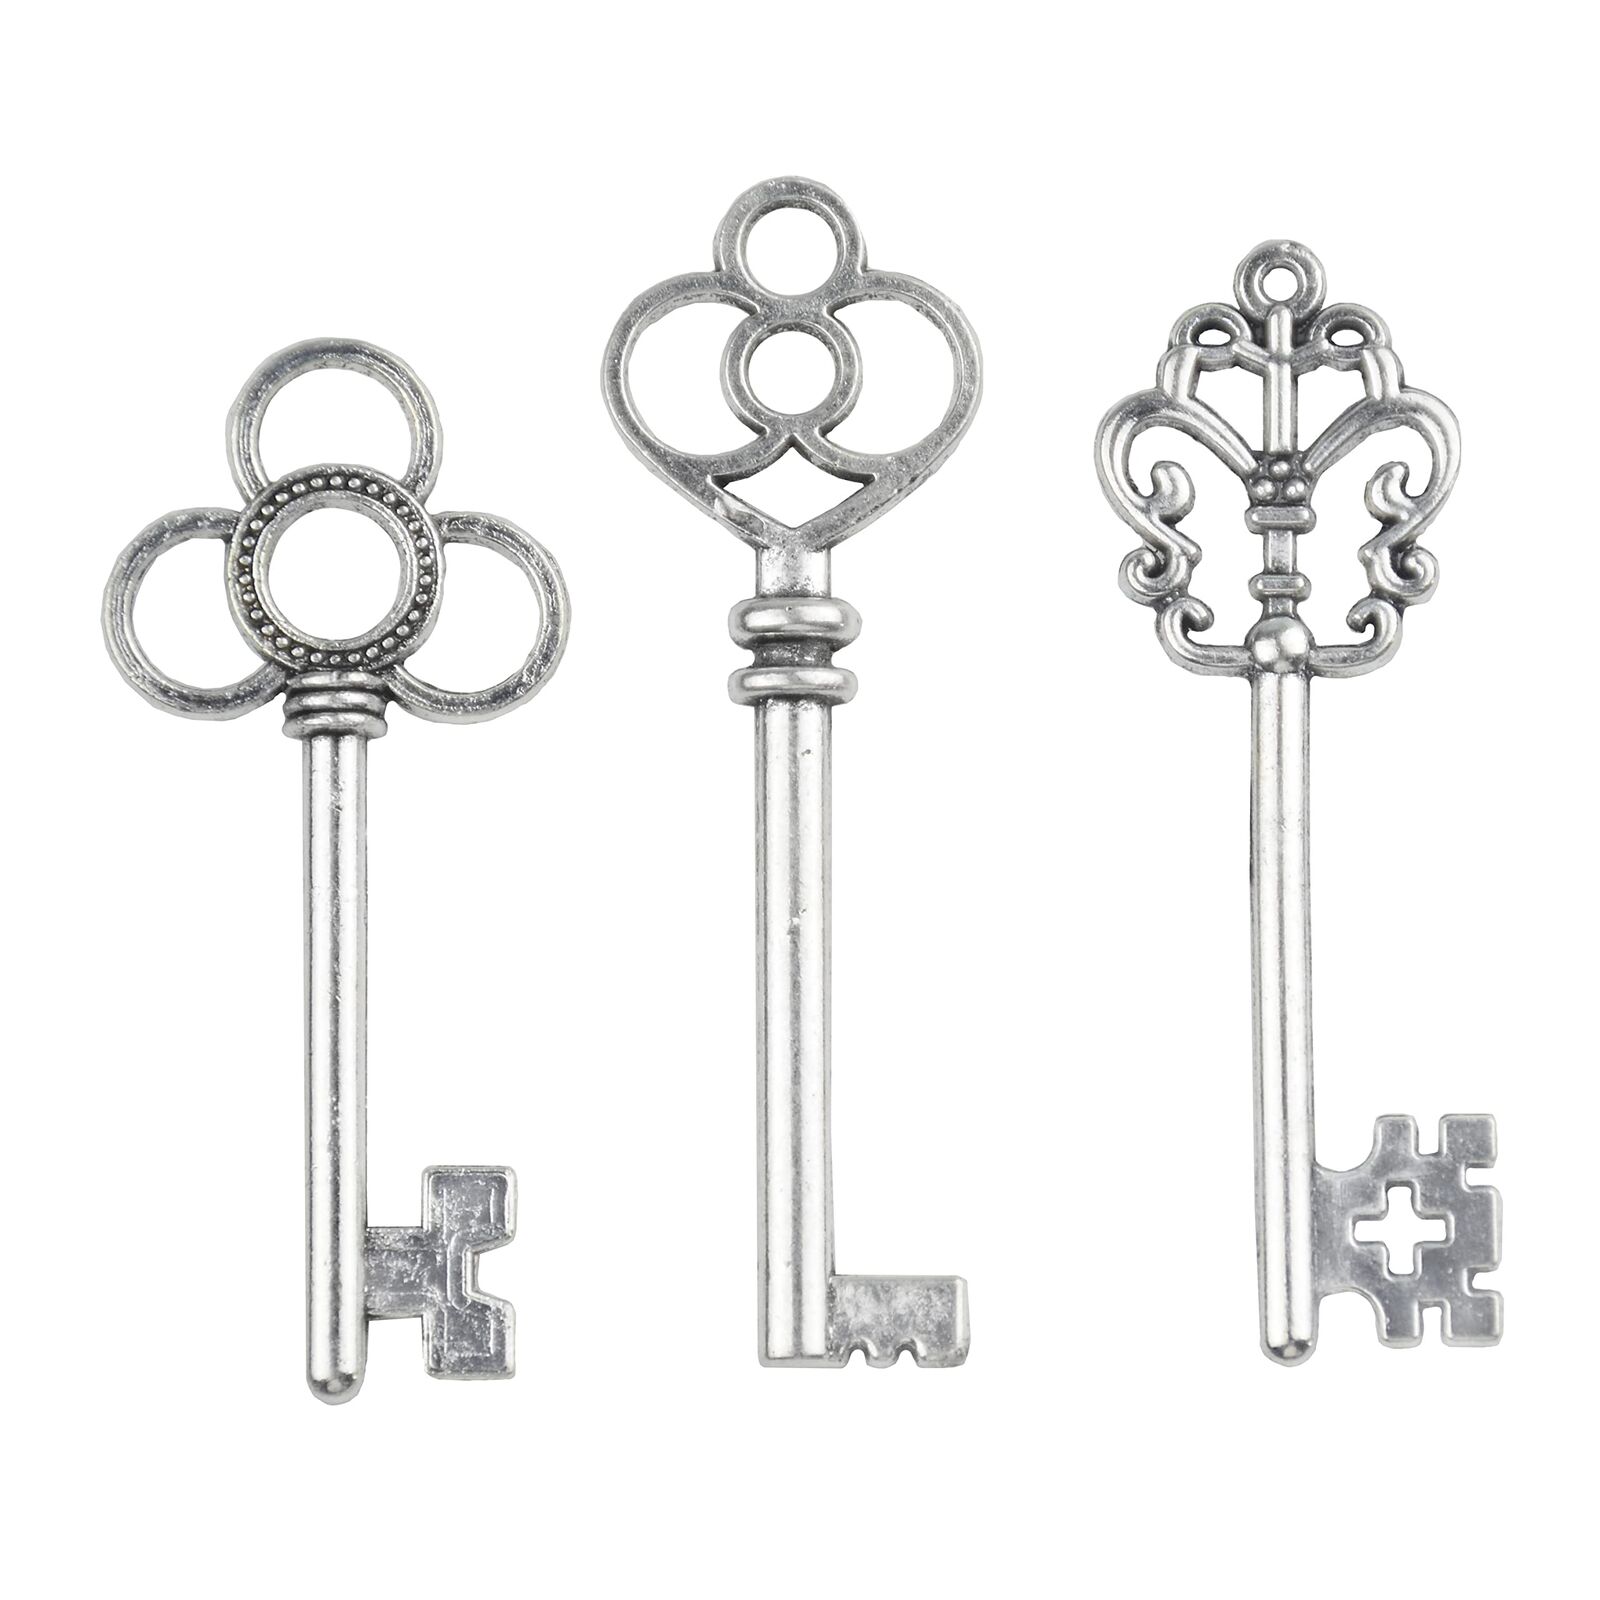 Mixed Set of 30 Large Skeleton Keys in Antique Silver - Set of 30 Keys